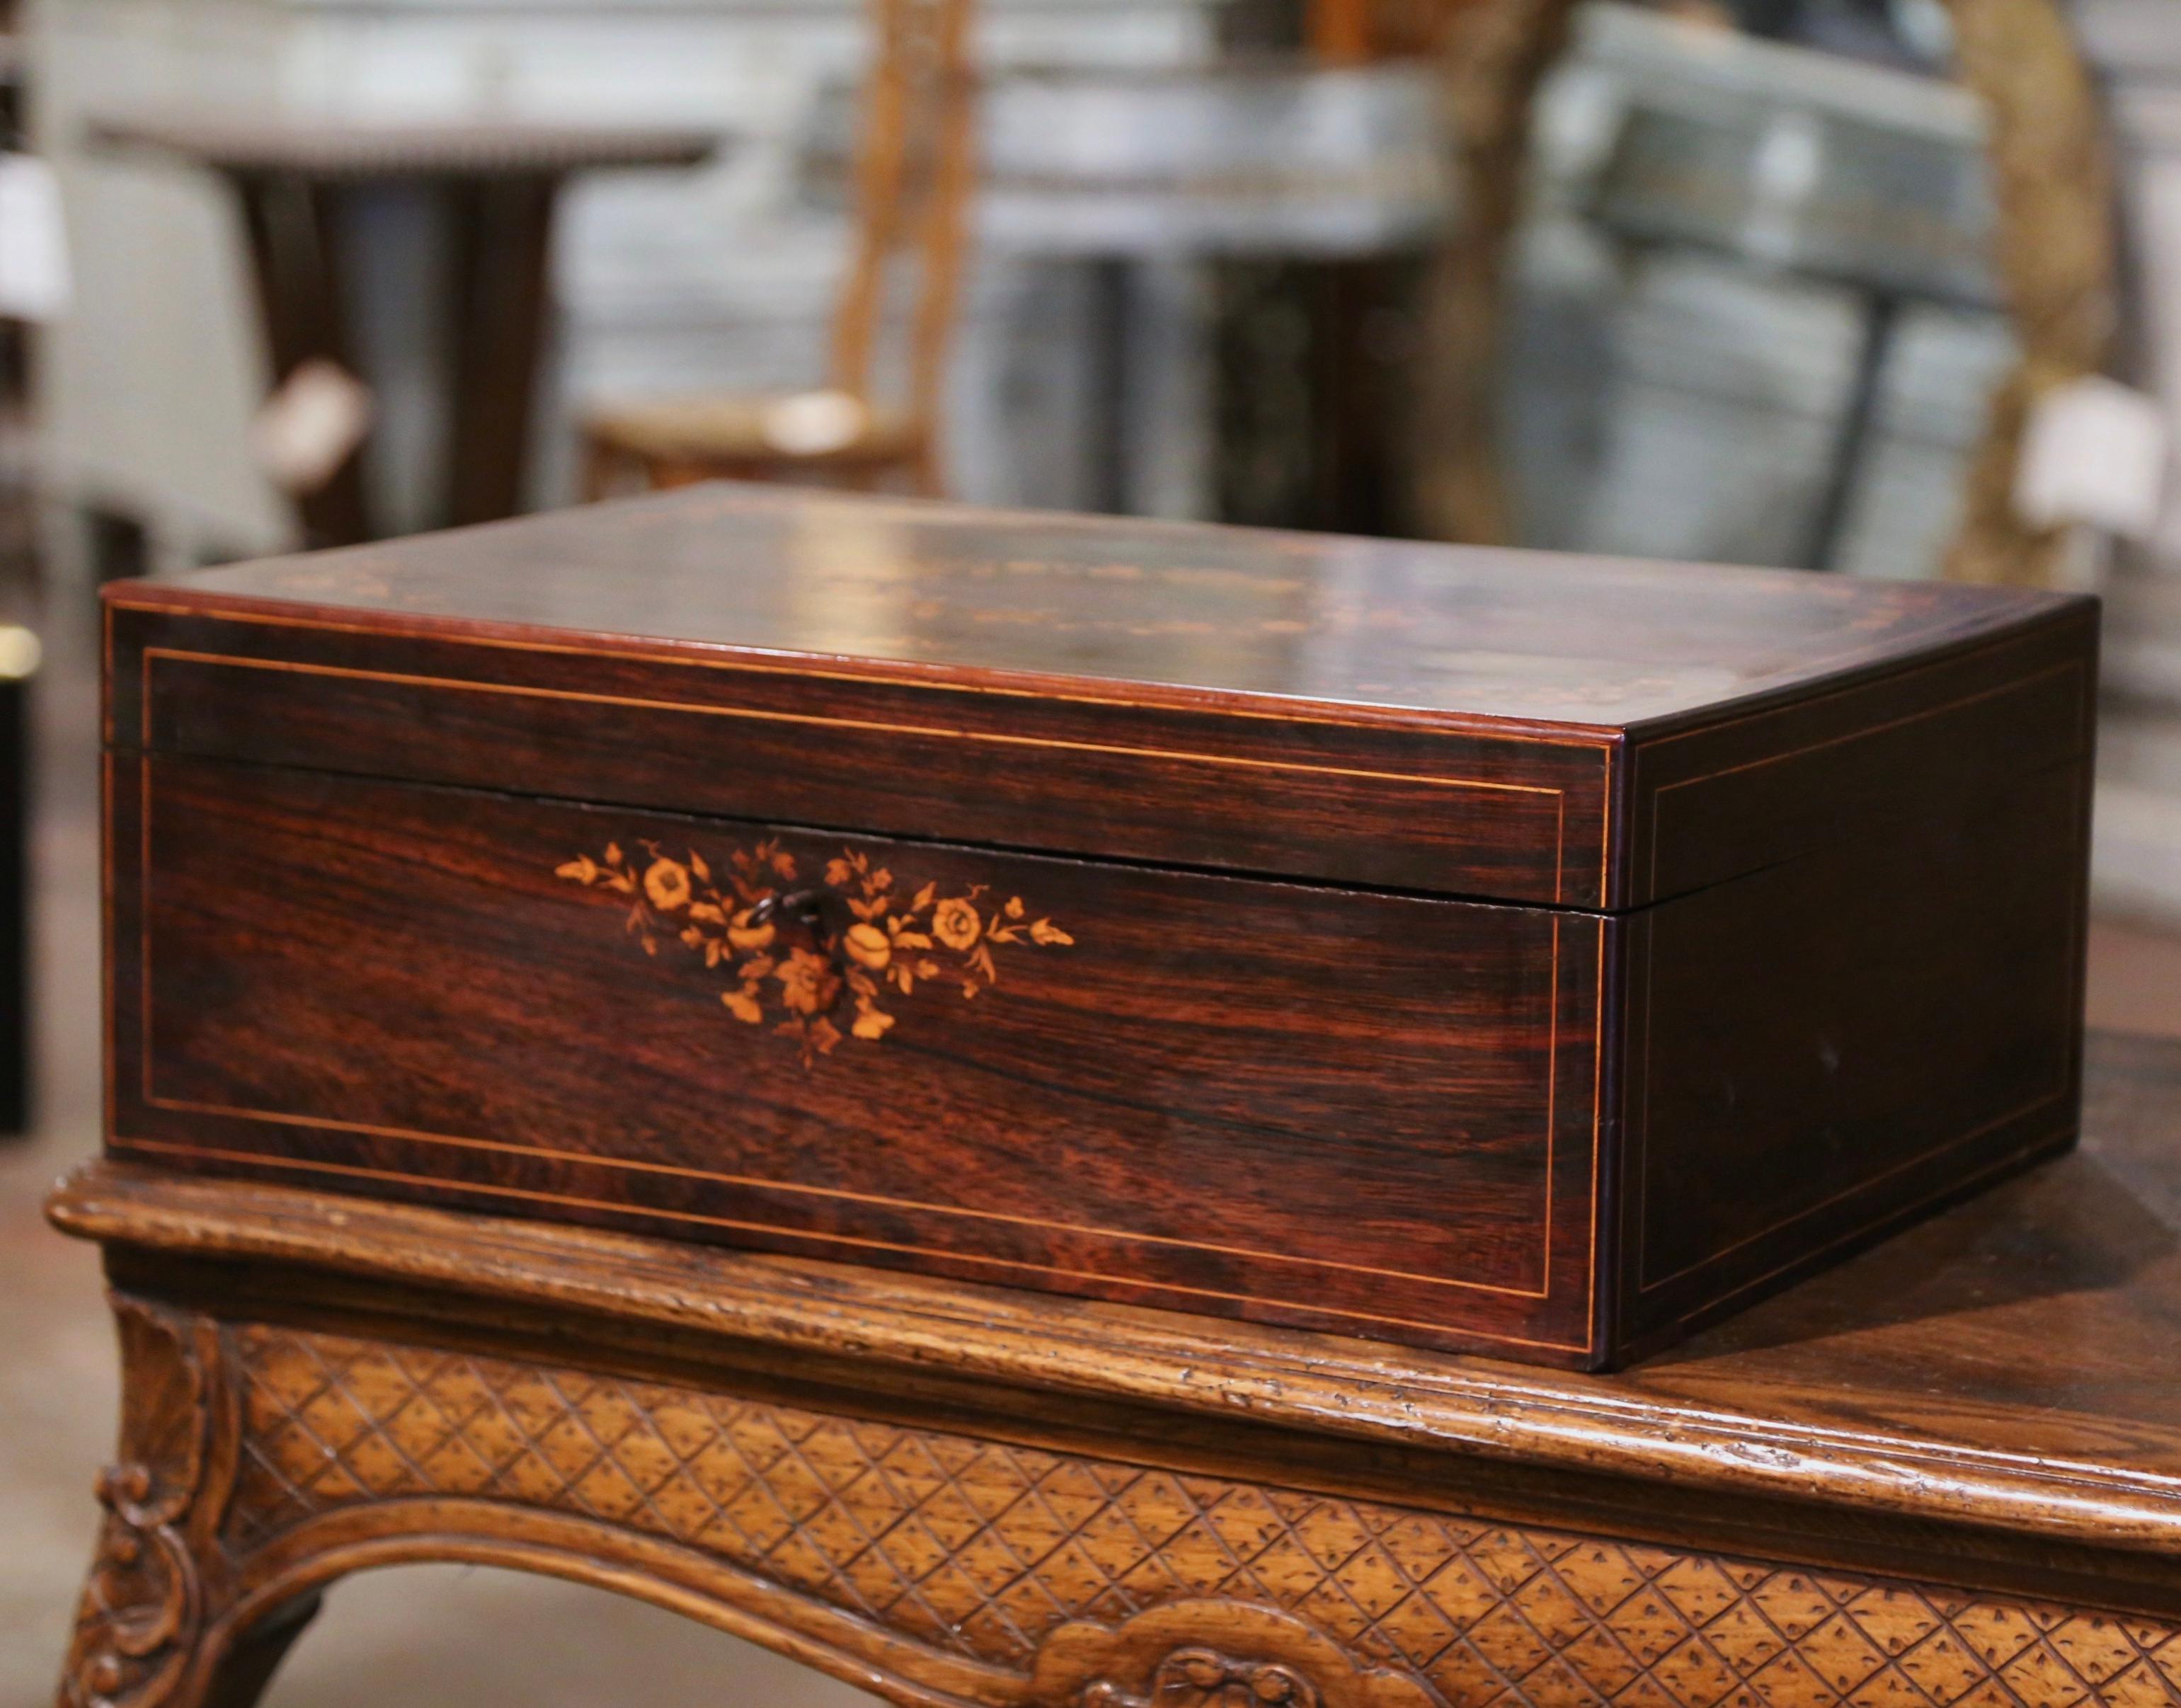 Dekorieren Sie einen Couchtisch oder ein Regal mit dieser eleganten antiken Schachtel. Der um 1880 in Frankreich gefertigte rechteckige Schrank ist in jeder Ecke mit eleganten floralen Einlegearbeiten verziert und mit einem zentralen Laubmedaillon